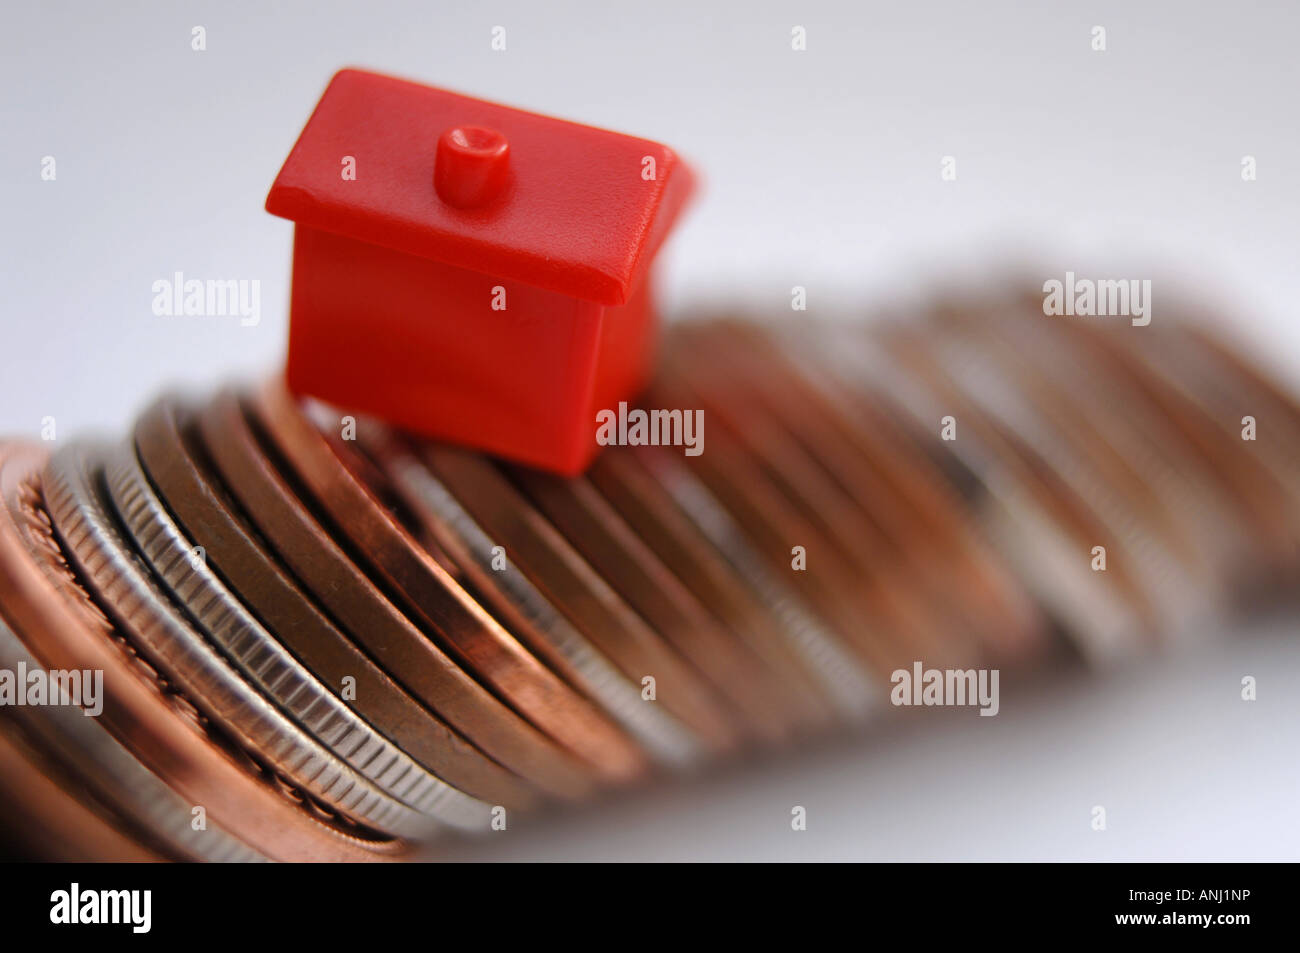 Eine rote Monolopy Haus stehen auf einem Haufen Münzen, Immobilienpreise, Darlehen und Hypotheken zu illustrieren Stockfoto